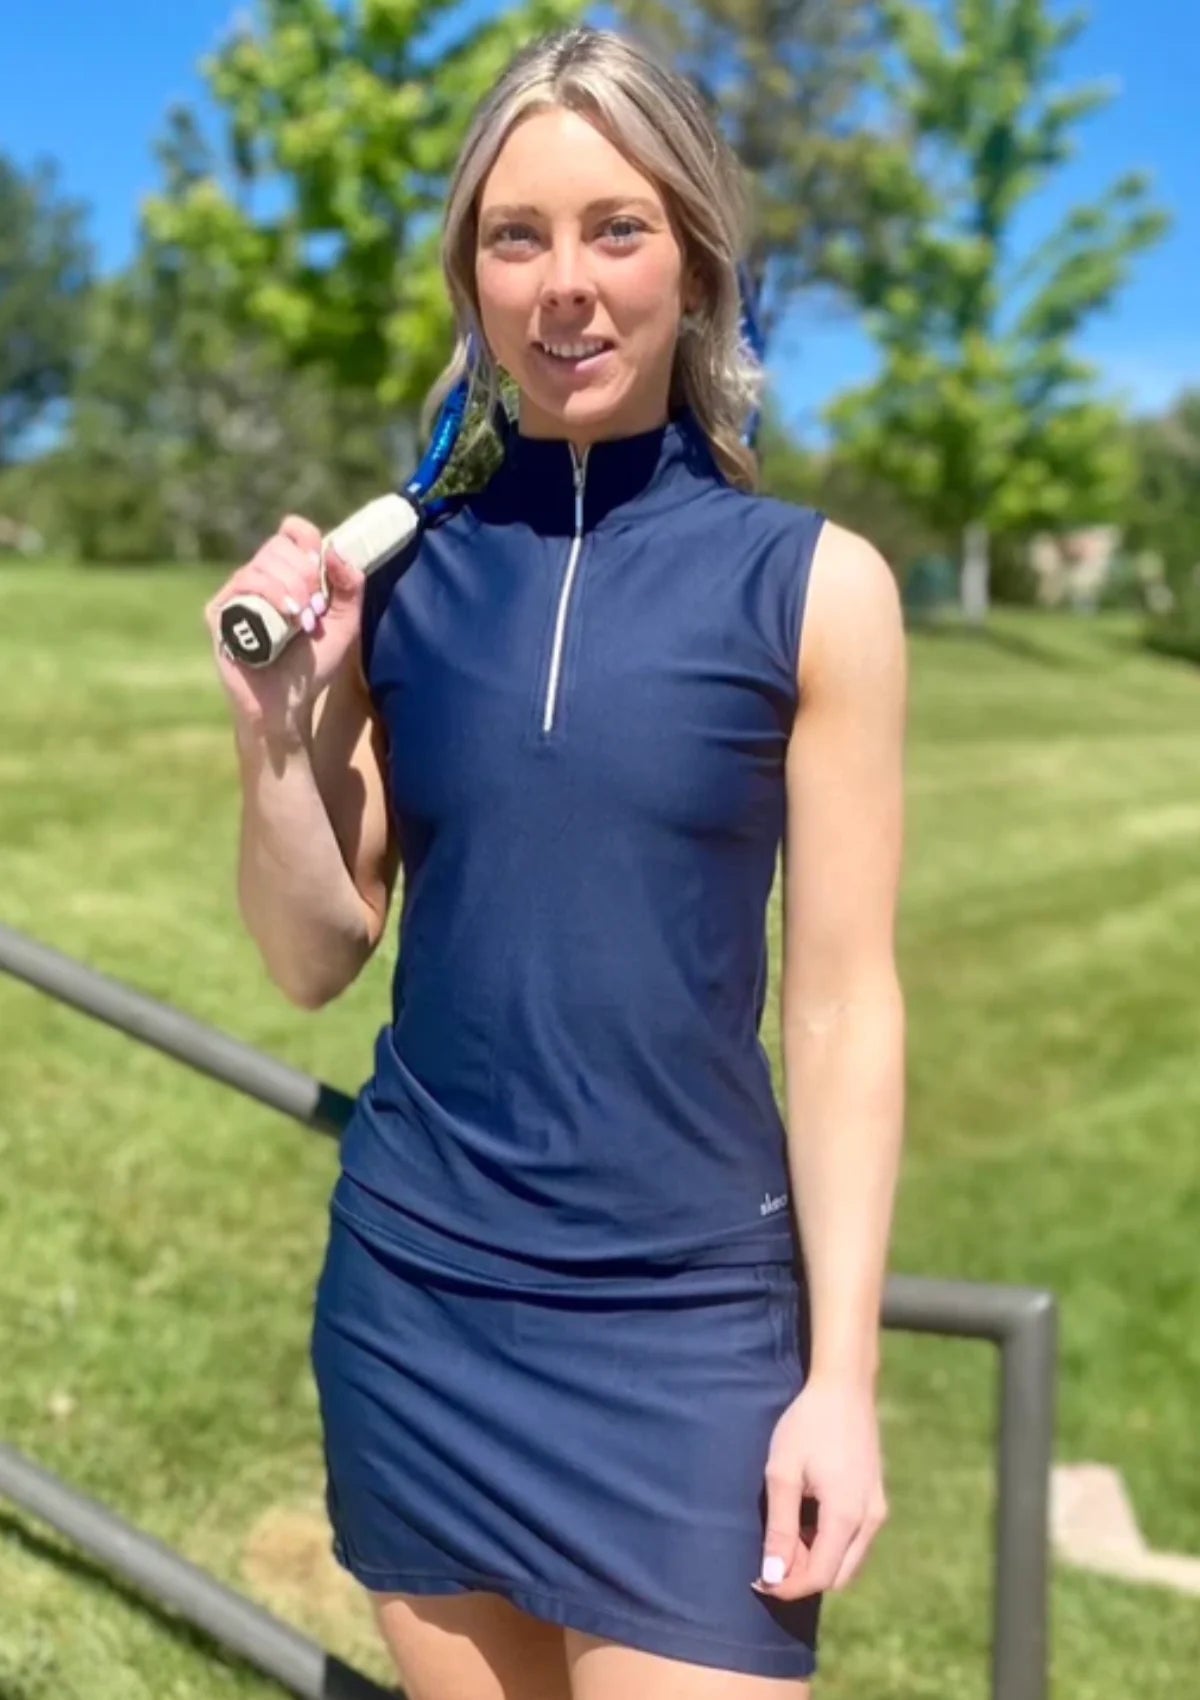 Woman outdoors with tennis racket wearing navy skort and half-zip top